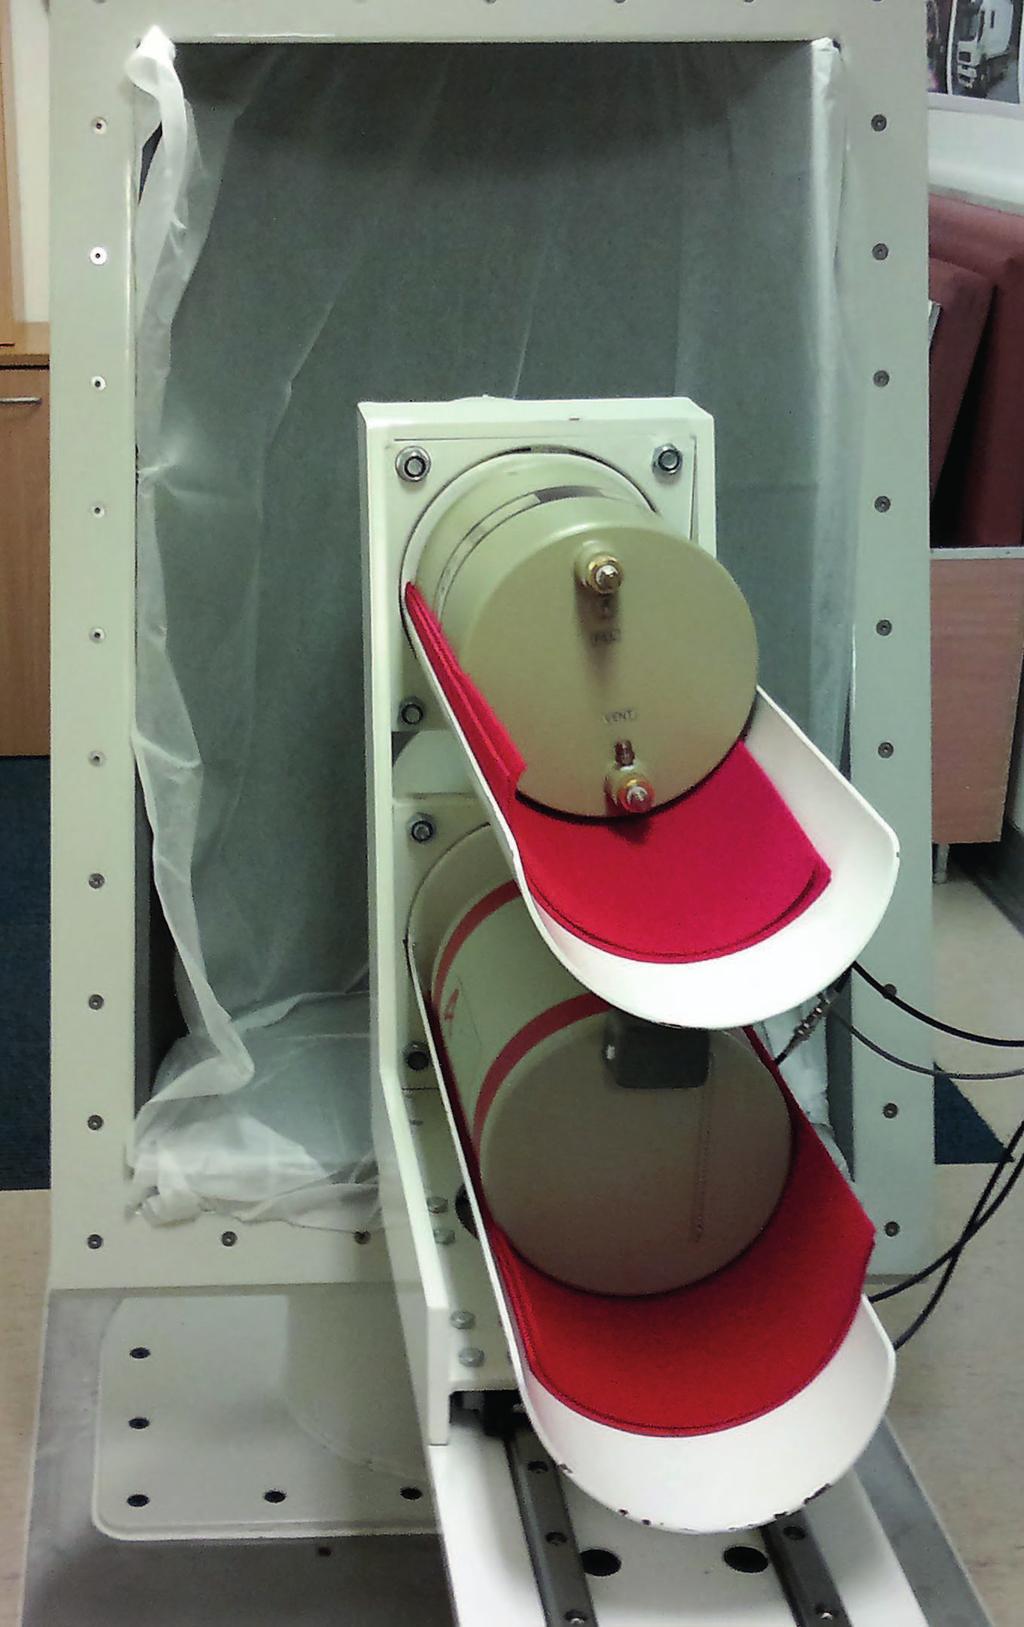 Liikkuvan laboratorion taustasuoja ja ilmaisimet. Bild 10.1b. Mätningsstol i det mobila laboratoriet.